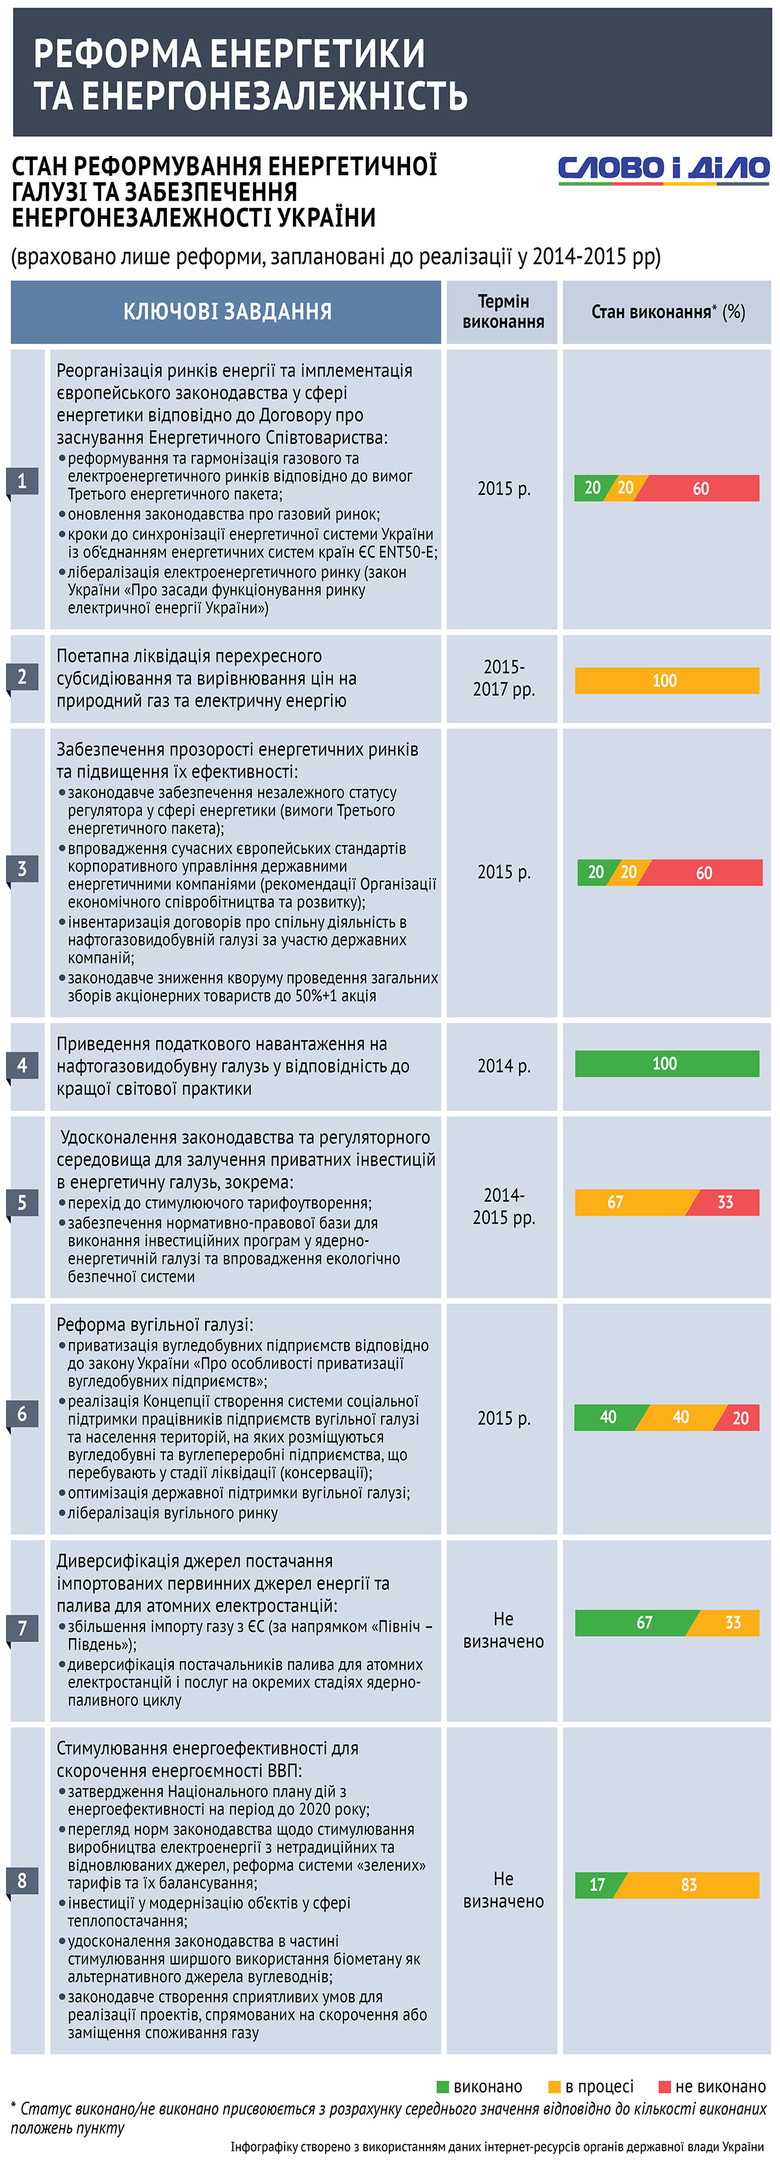 Как парламентарии придерживаются коалиционного соглашения? Анализ энергетических реформ в Украине и борьба за энергонезависимость